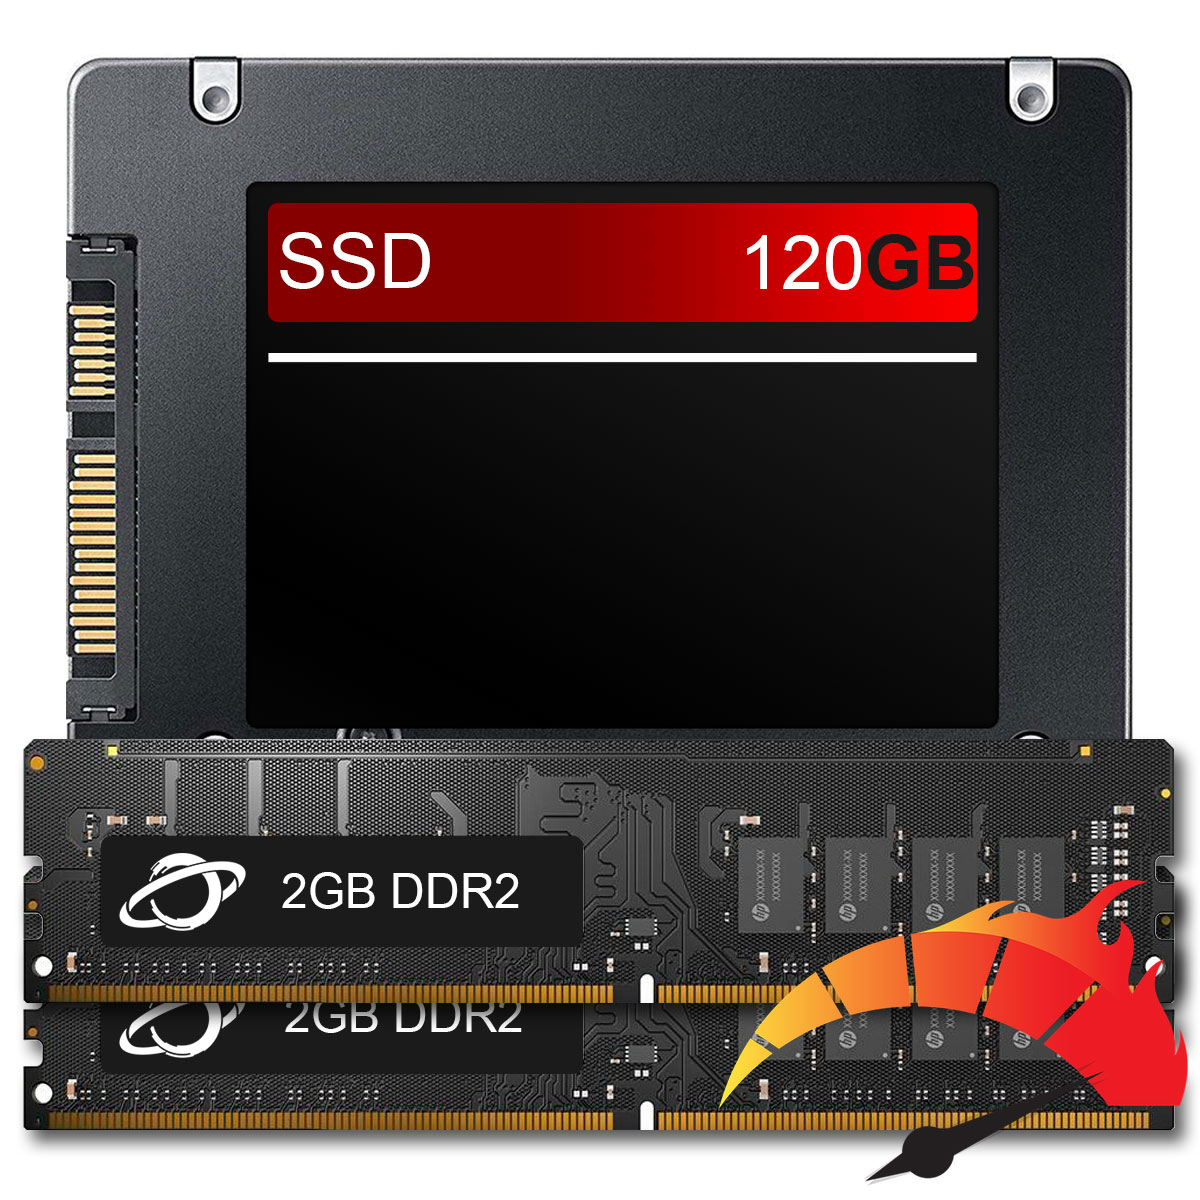 Kit Upgrade de alto desempenho - SSD 120GB + Memória 4GB DDR2 (2x2GB), aumento da velocidade do PC em até 10x